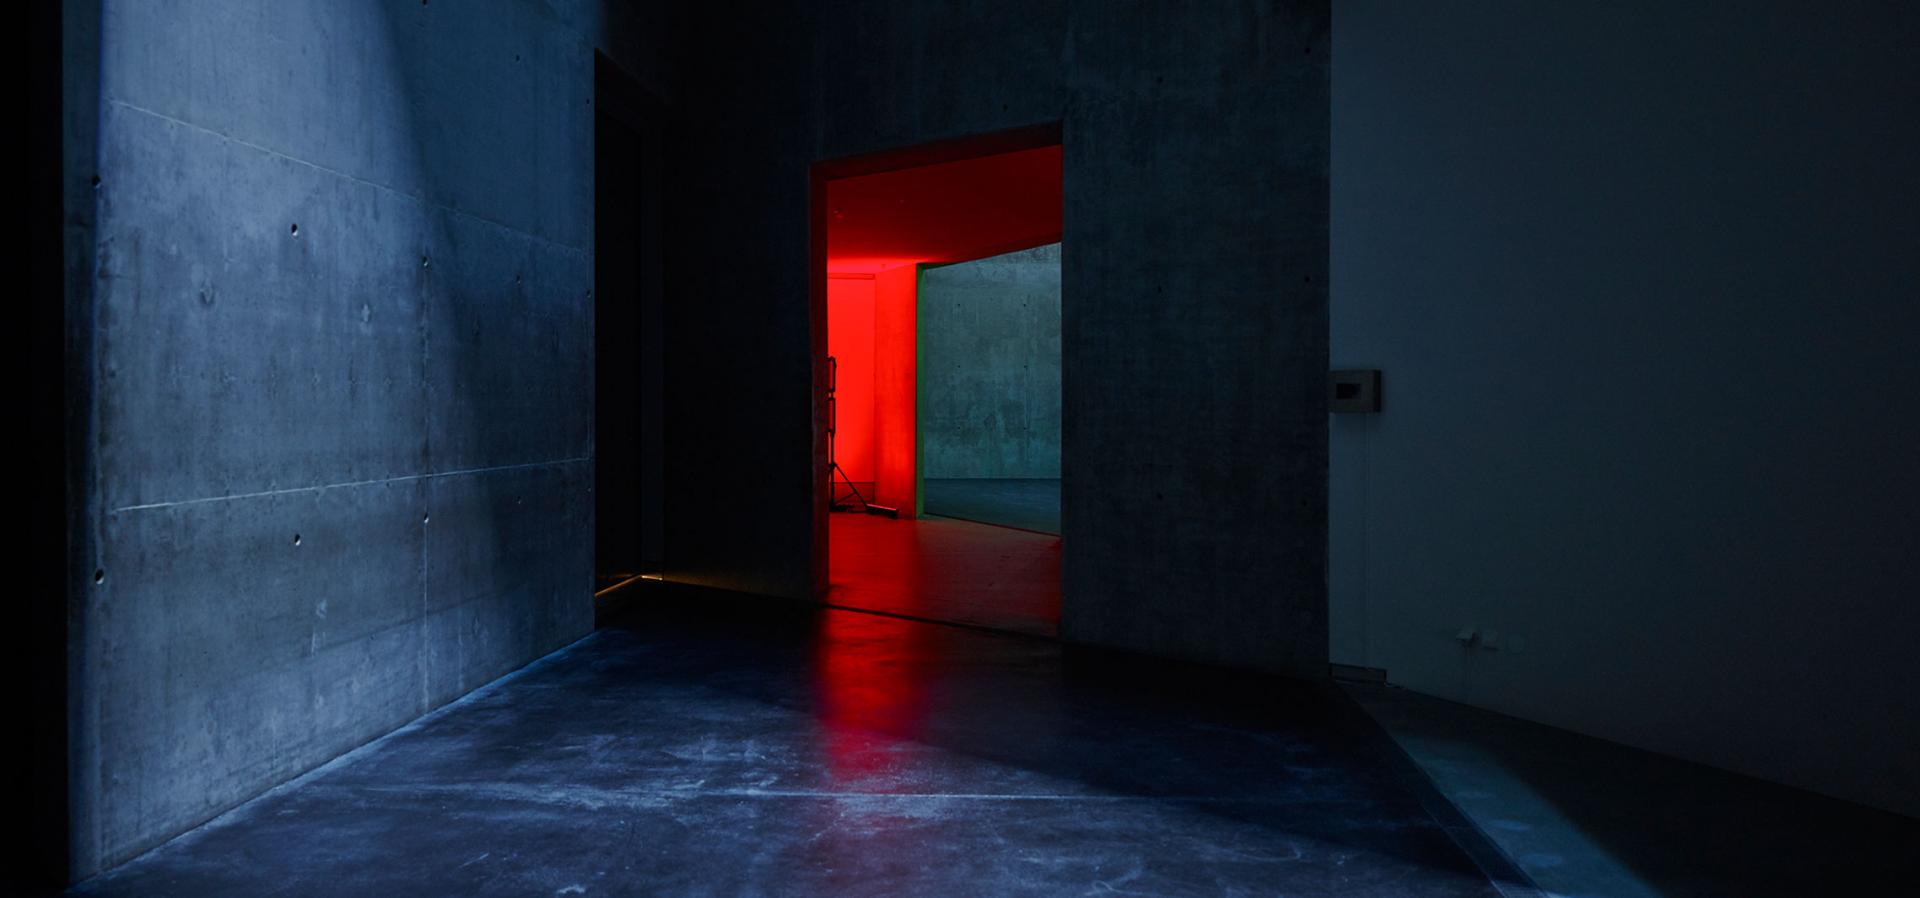 Ein dunkler Gang, durch eine Tür am ende dringt rotes Licht.